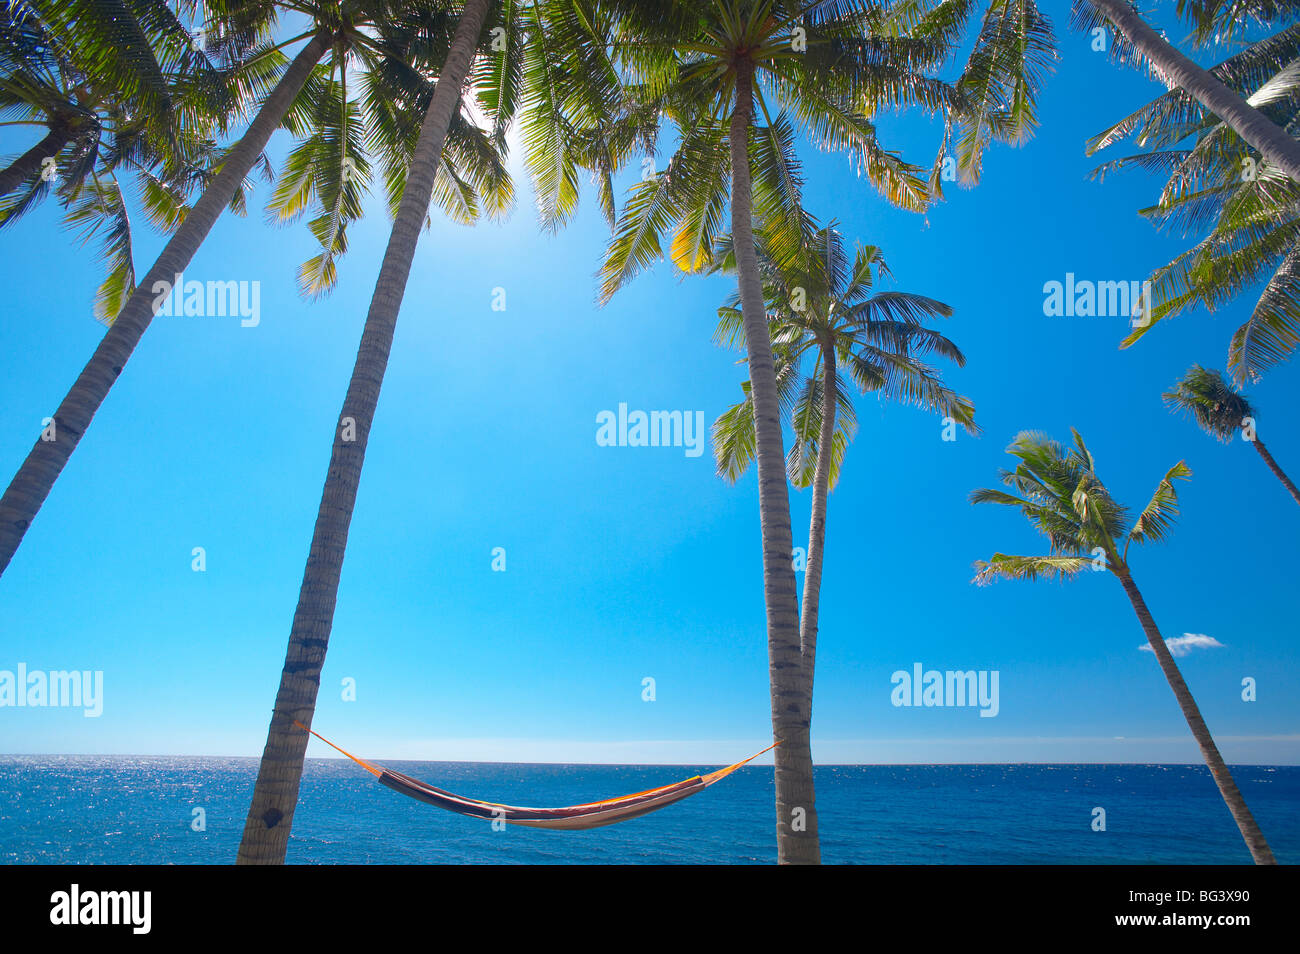 Hängematte zwischen Palmen am Strand, Bali, Indonesien, Südostasien, Asien Stockfoto